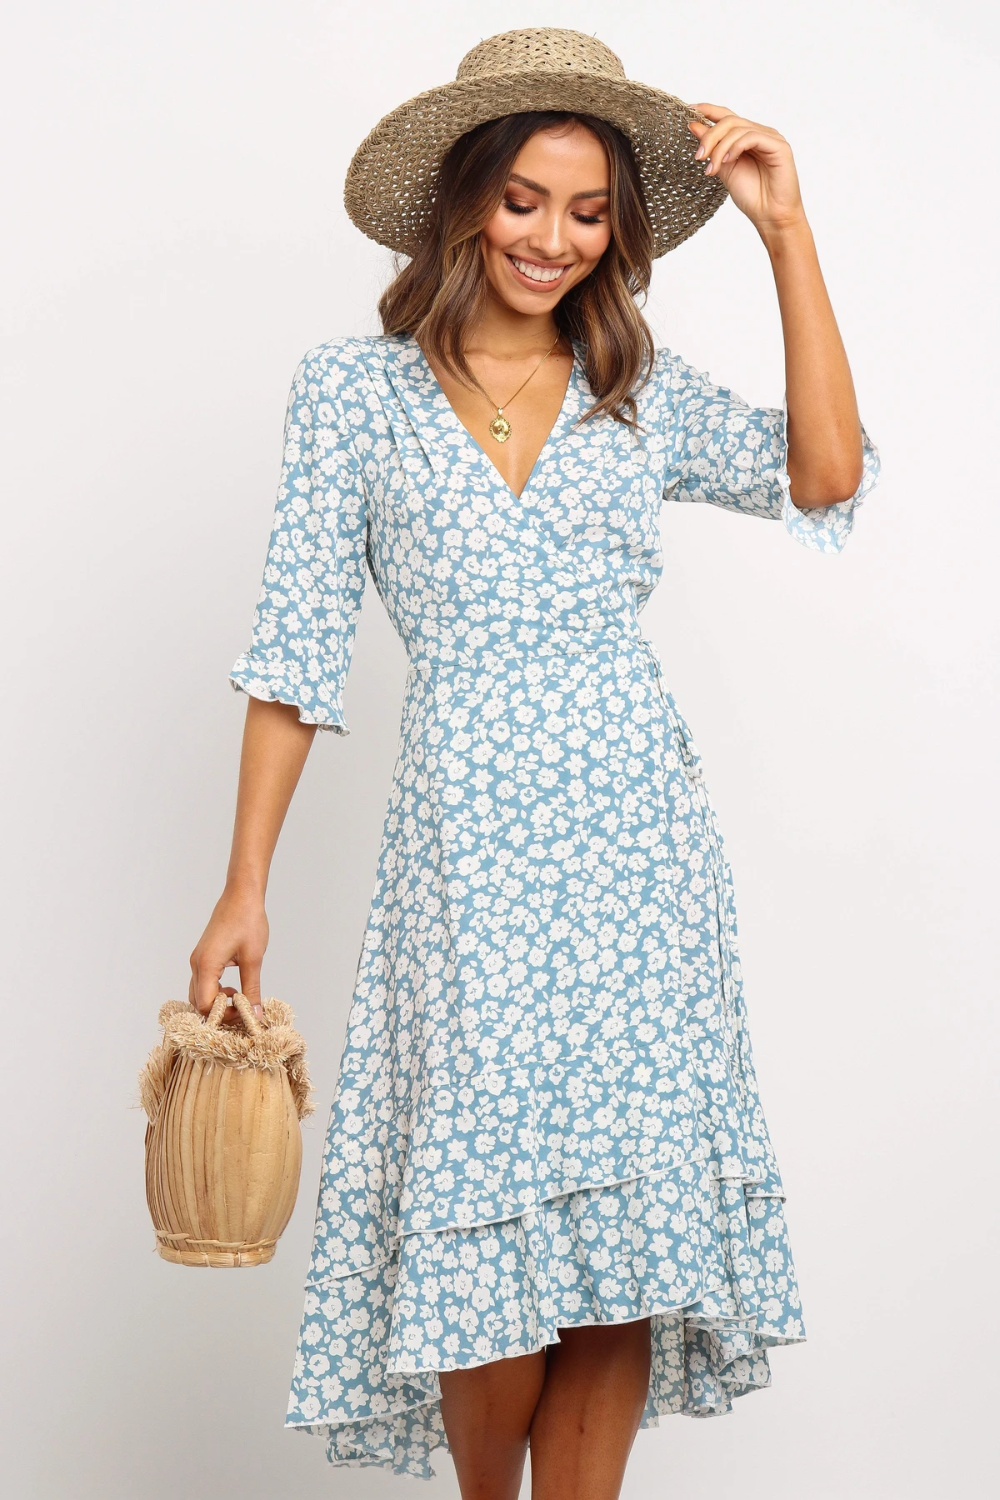 Chiaria Dress - Blue -   18 casual dress Patterns ideas